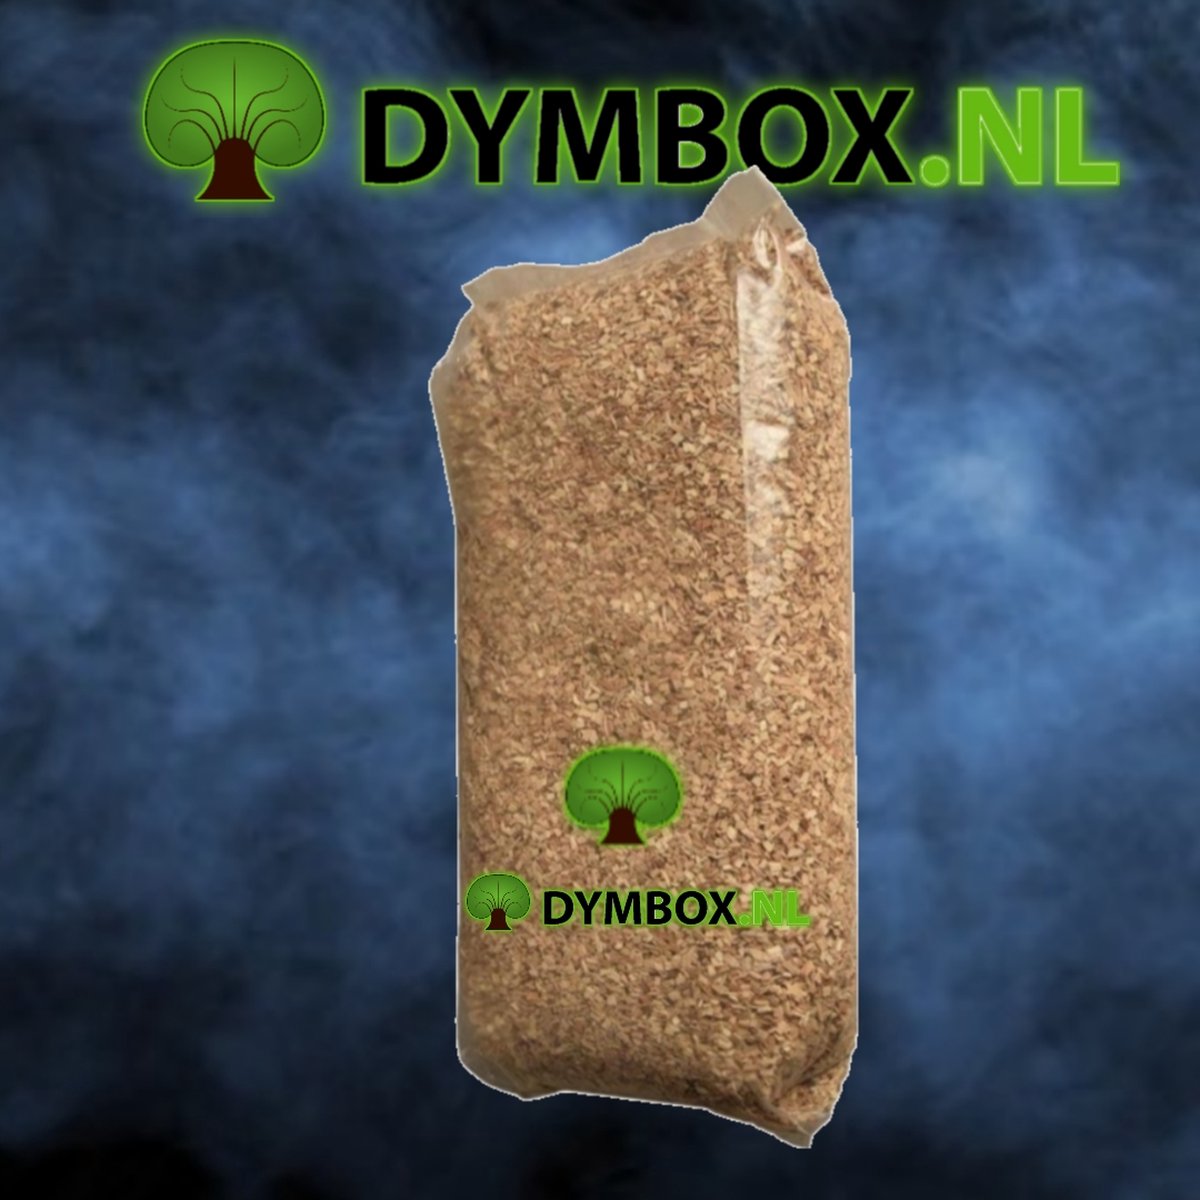 Rookhout Eiken Snippers circa 15kg/60 Liter (Speciaal geproduceerd voor het roken van levensmiddelen) - Dymbox